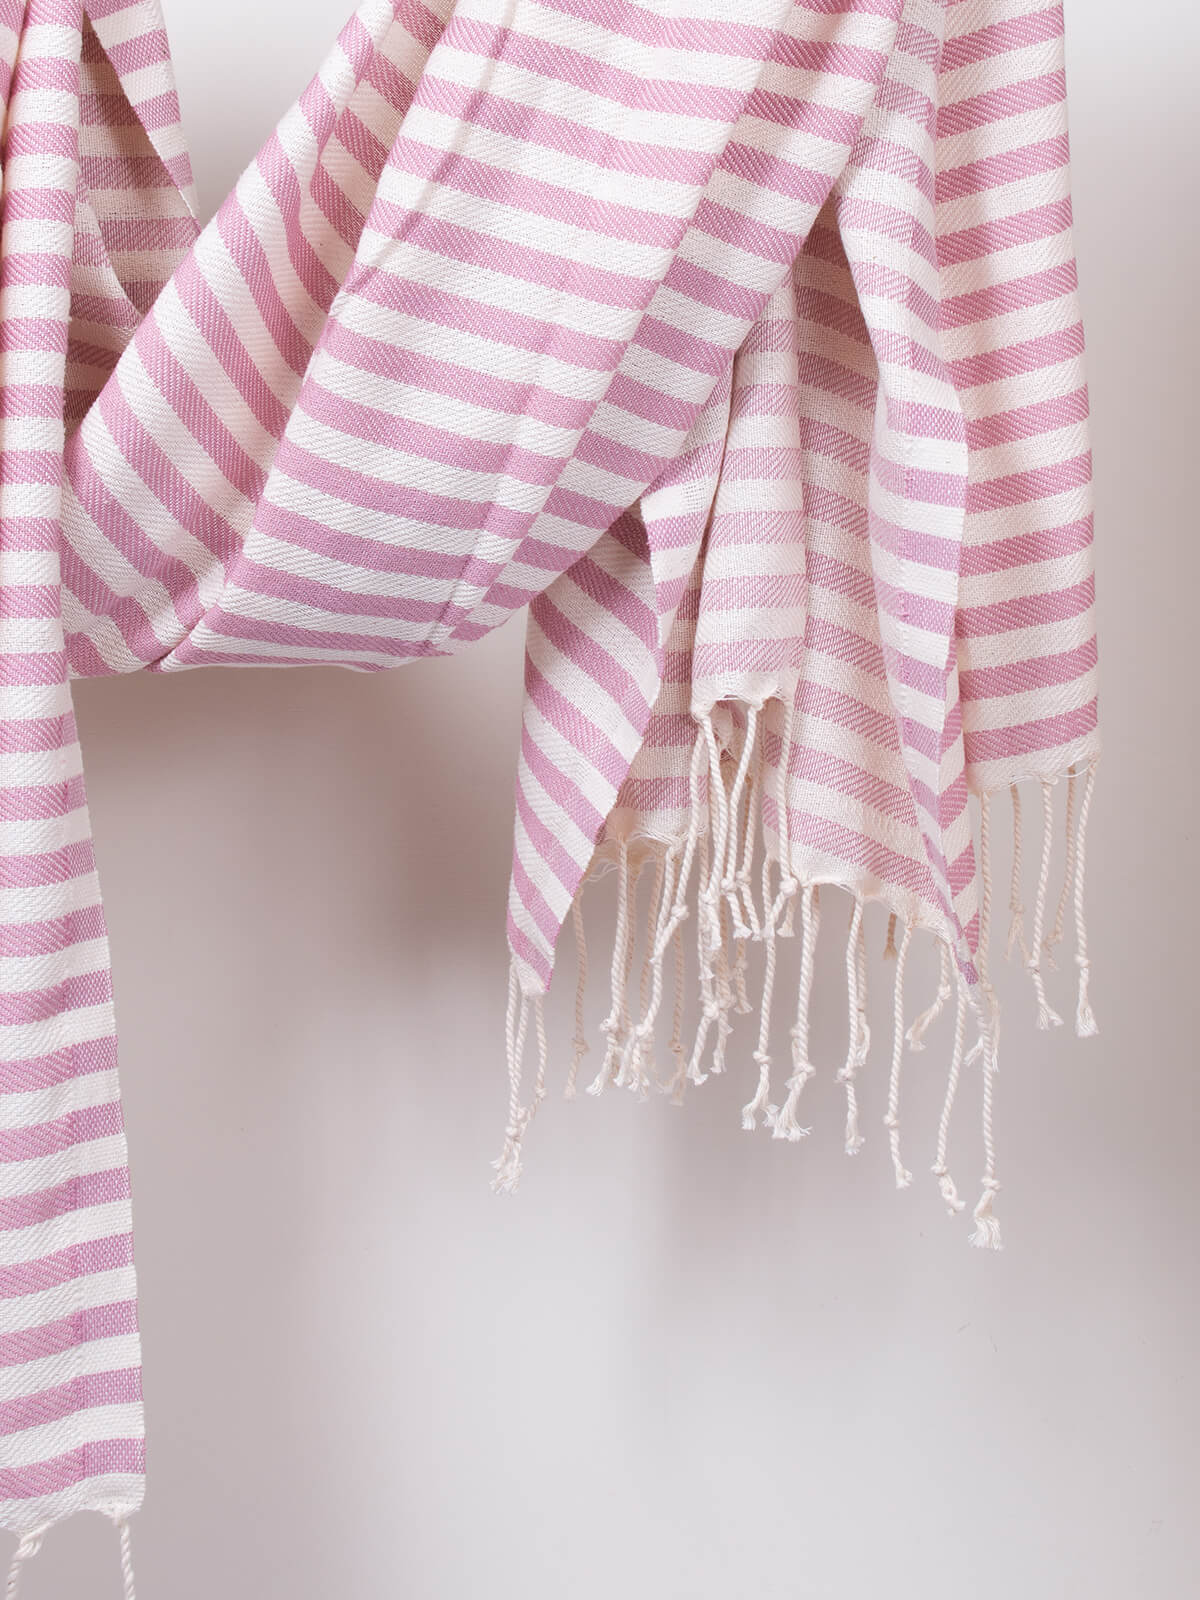 Sorrento Hammam Towel - Vintage Pink